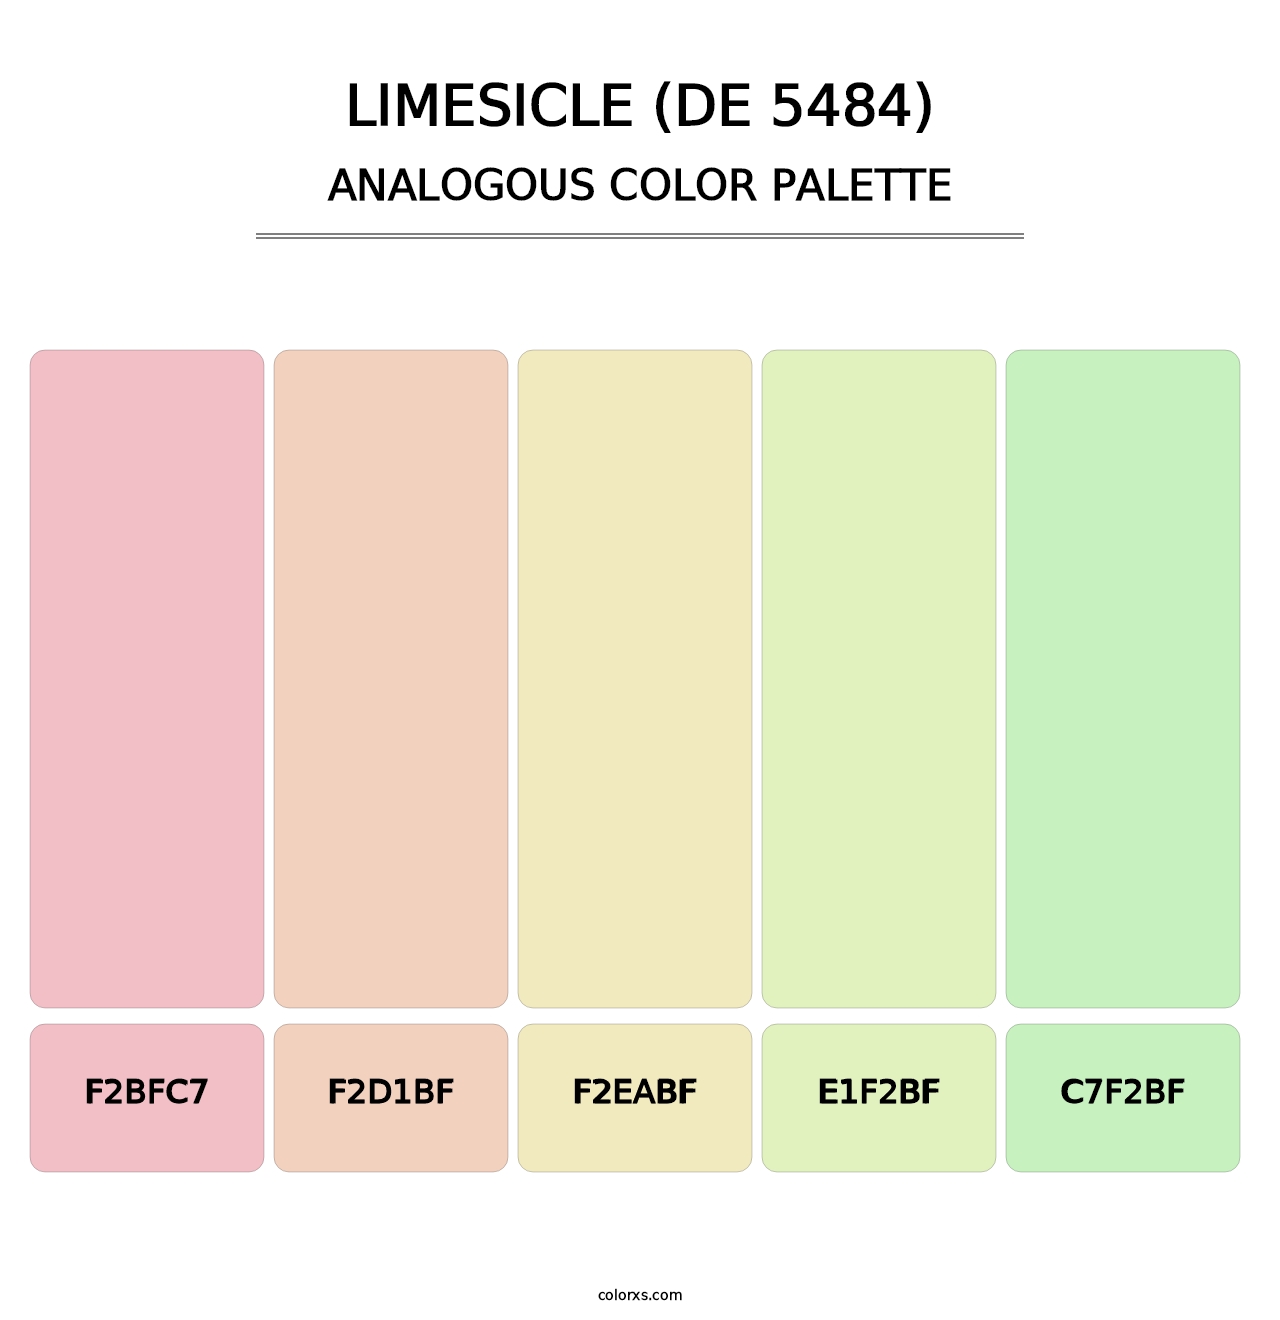 Limesicle (DE 5484) - Analogous Color Palette